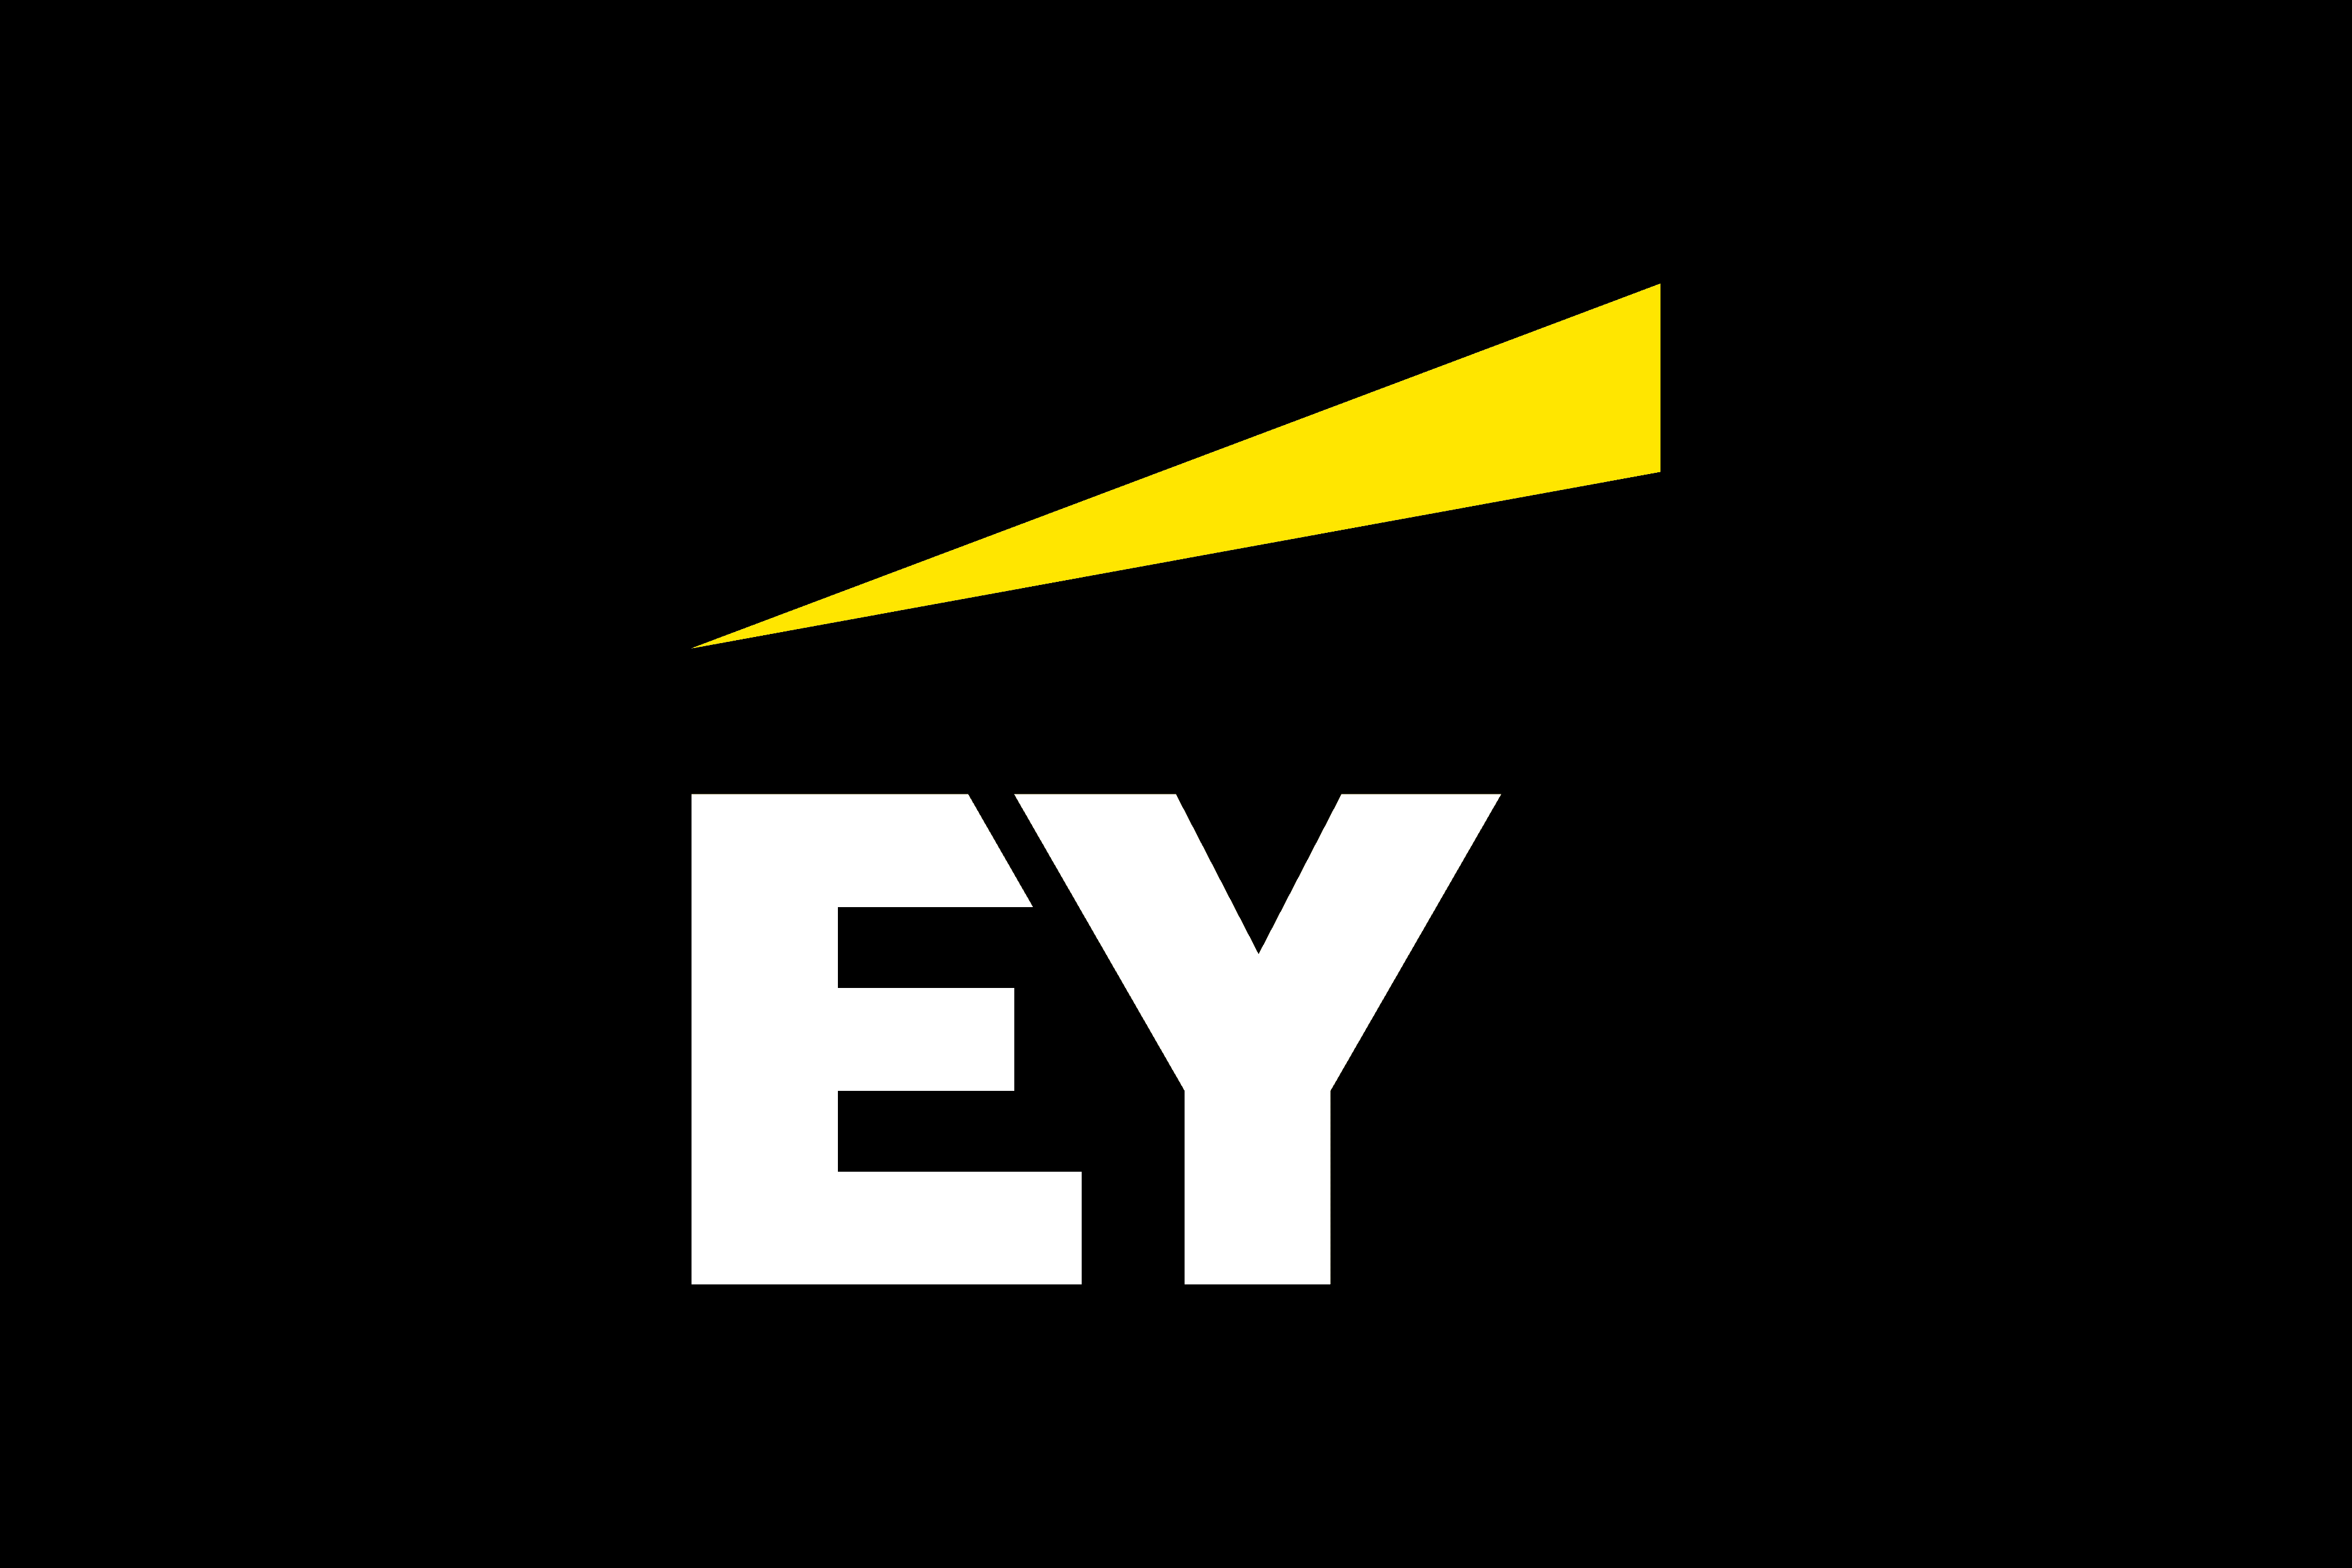 logo de EY